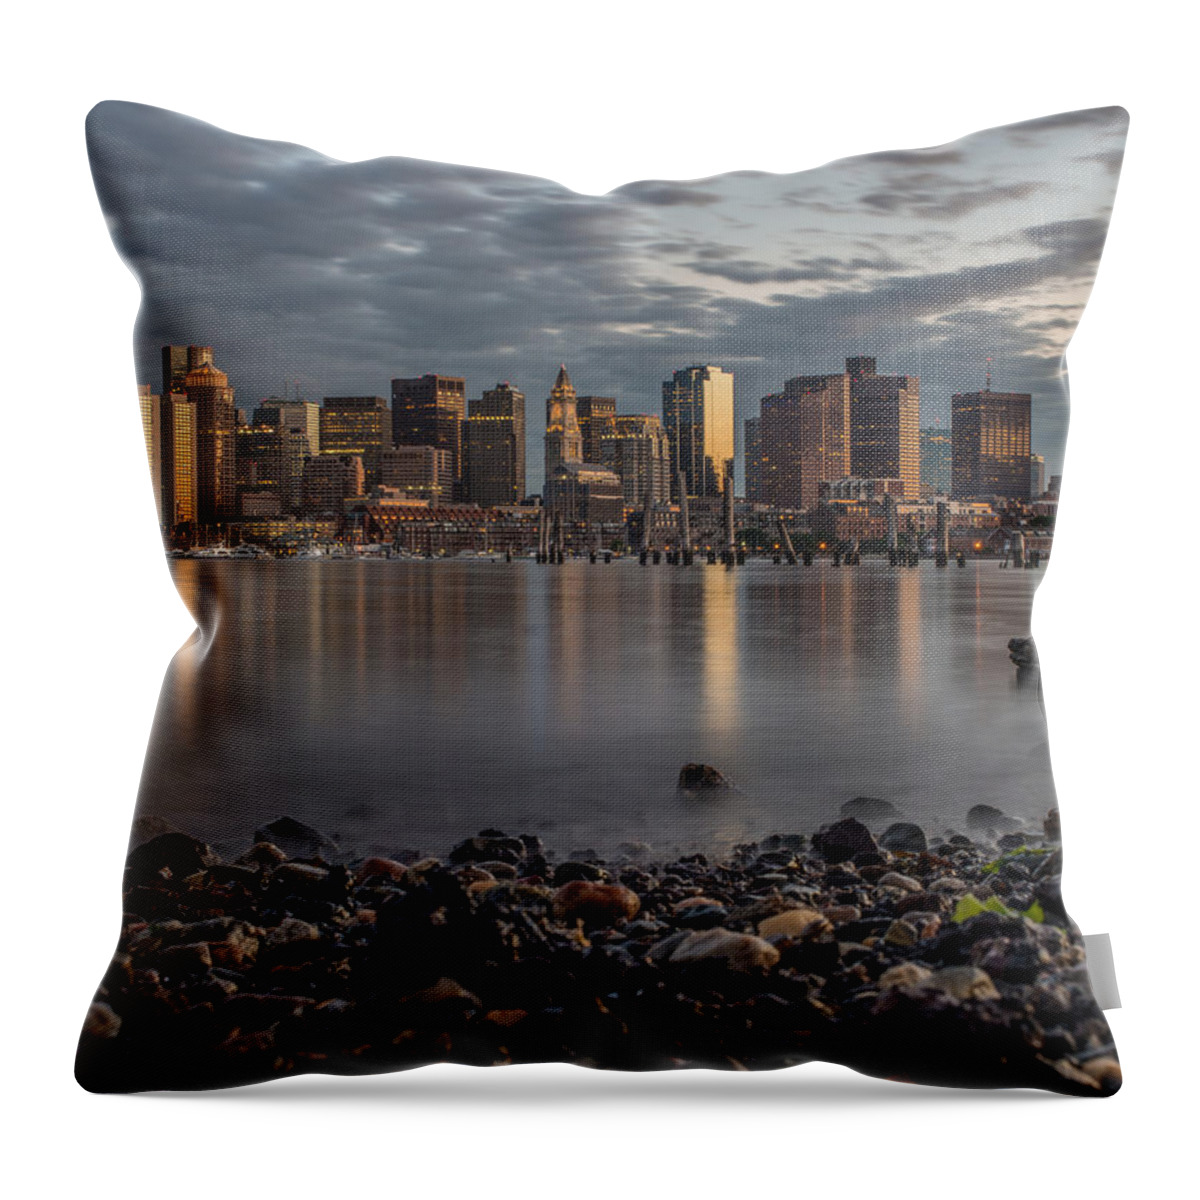  Throw Pillow featuring the photograph Carleton's Wharf by Bryan Xavier